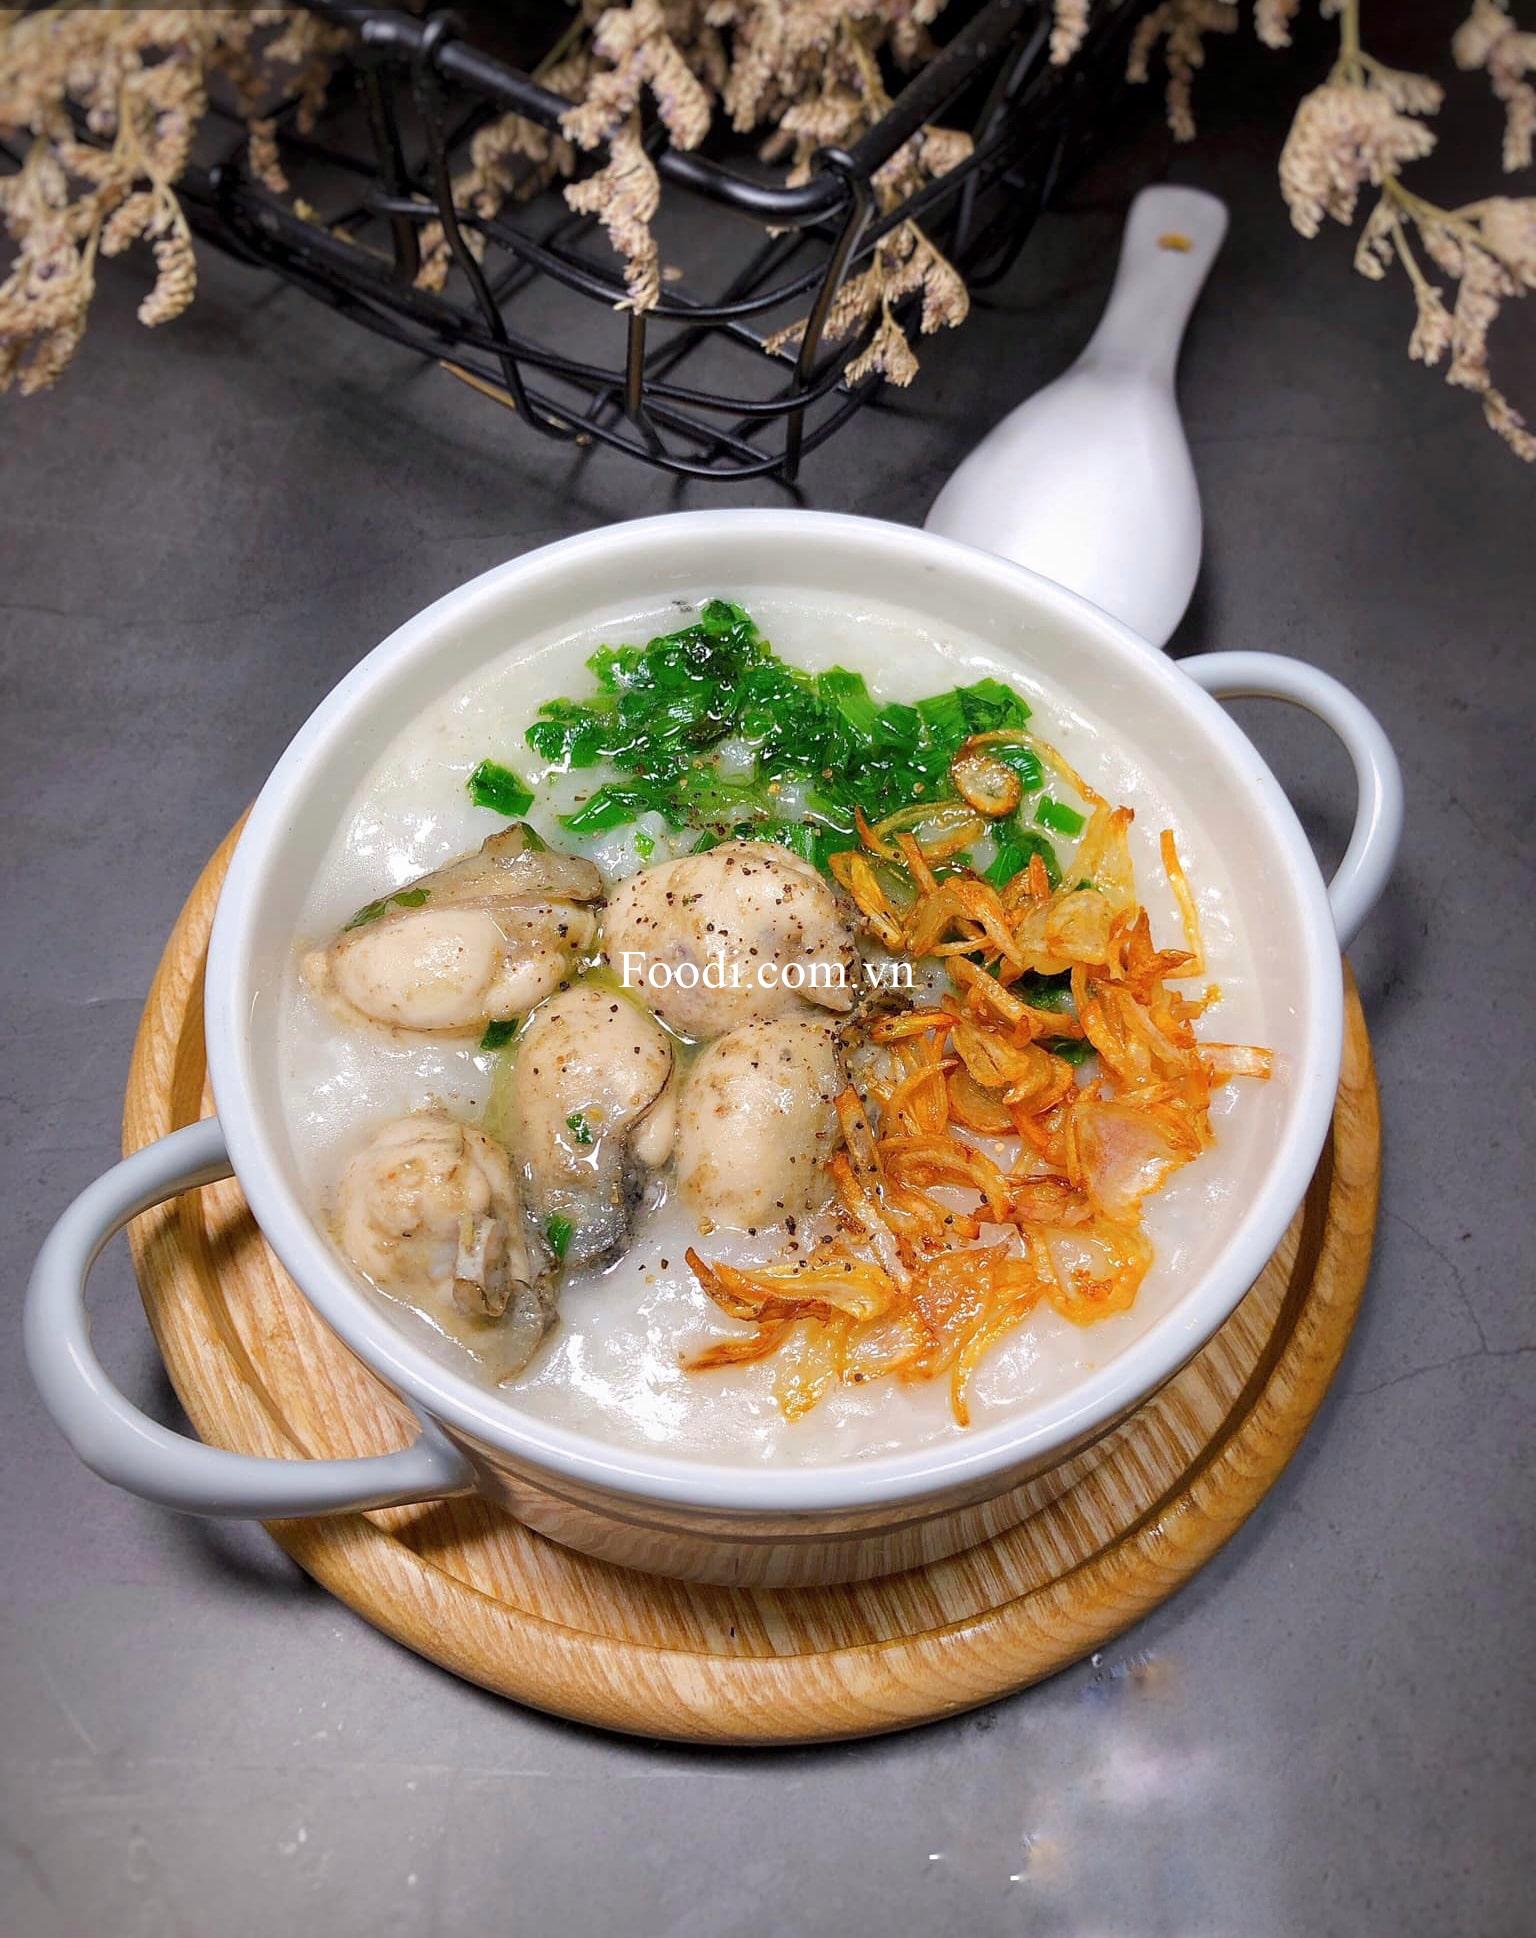 Ăn gì ở Đồng Hới? 21 Món ngon Quảng Bình + quán ăn ngon Quảng Bình